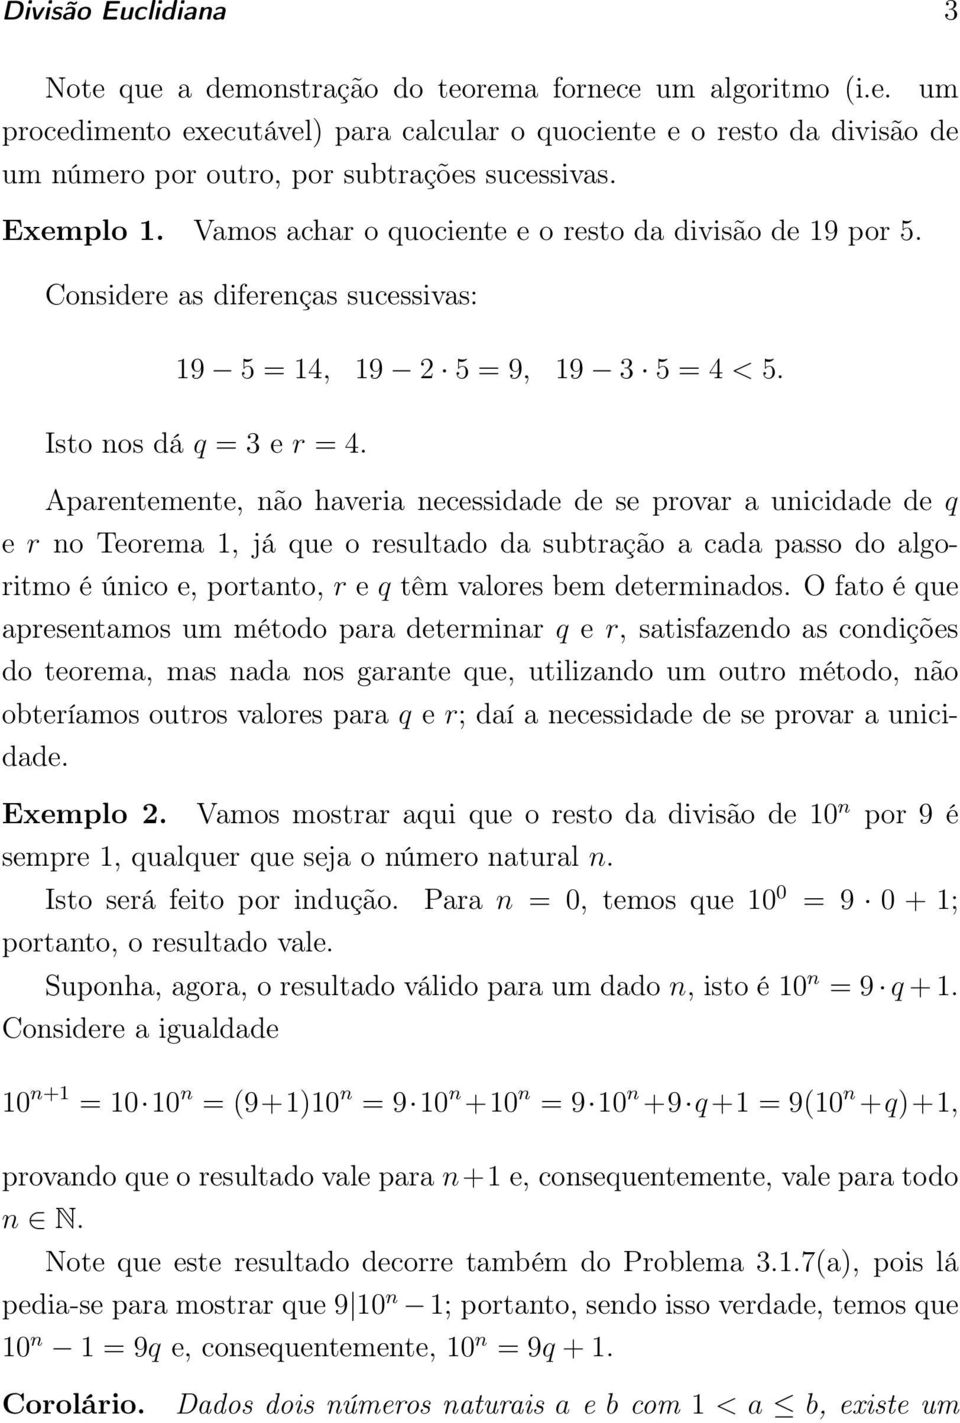 Aparentemente, não haveria necessidade de se provar a unicidade de q e r no Teorema 1, já que o resultado da subtração a cada passo do algoritmo é único e, portanto, r e q têm valores bem